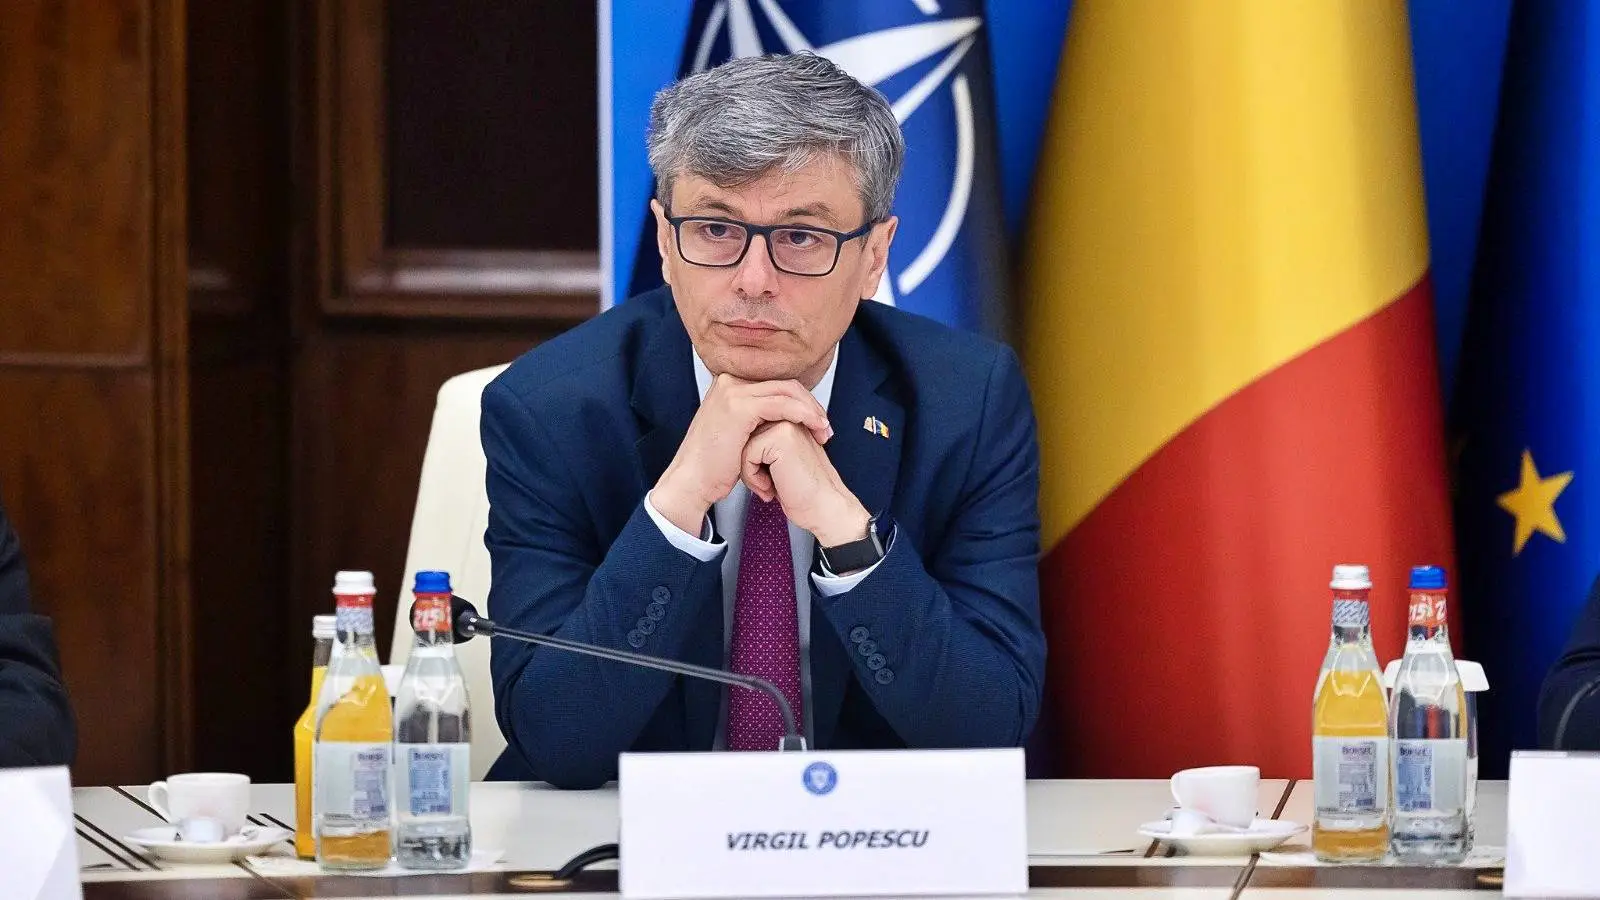 Ministre de l'Énergie Décisions IMPORTANTES Gaz Naturel Roumanie Décisions Niveau européen